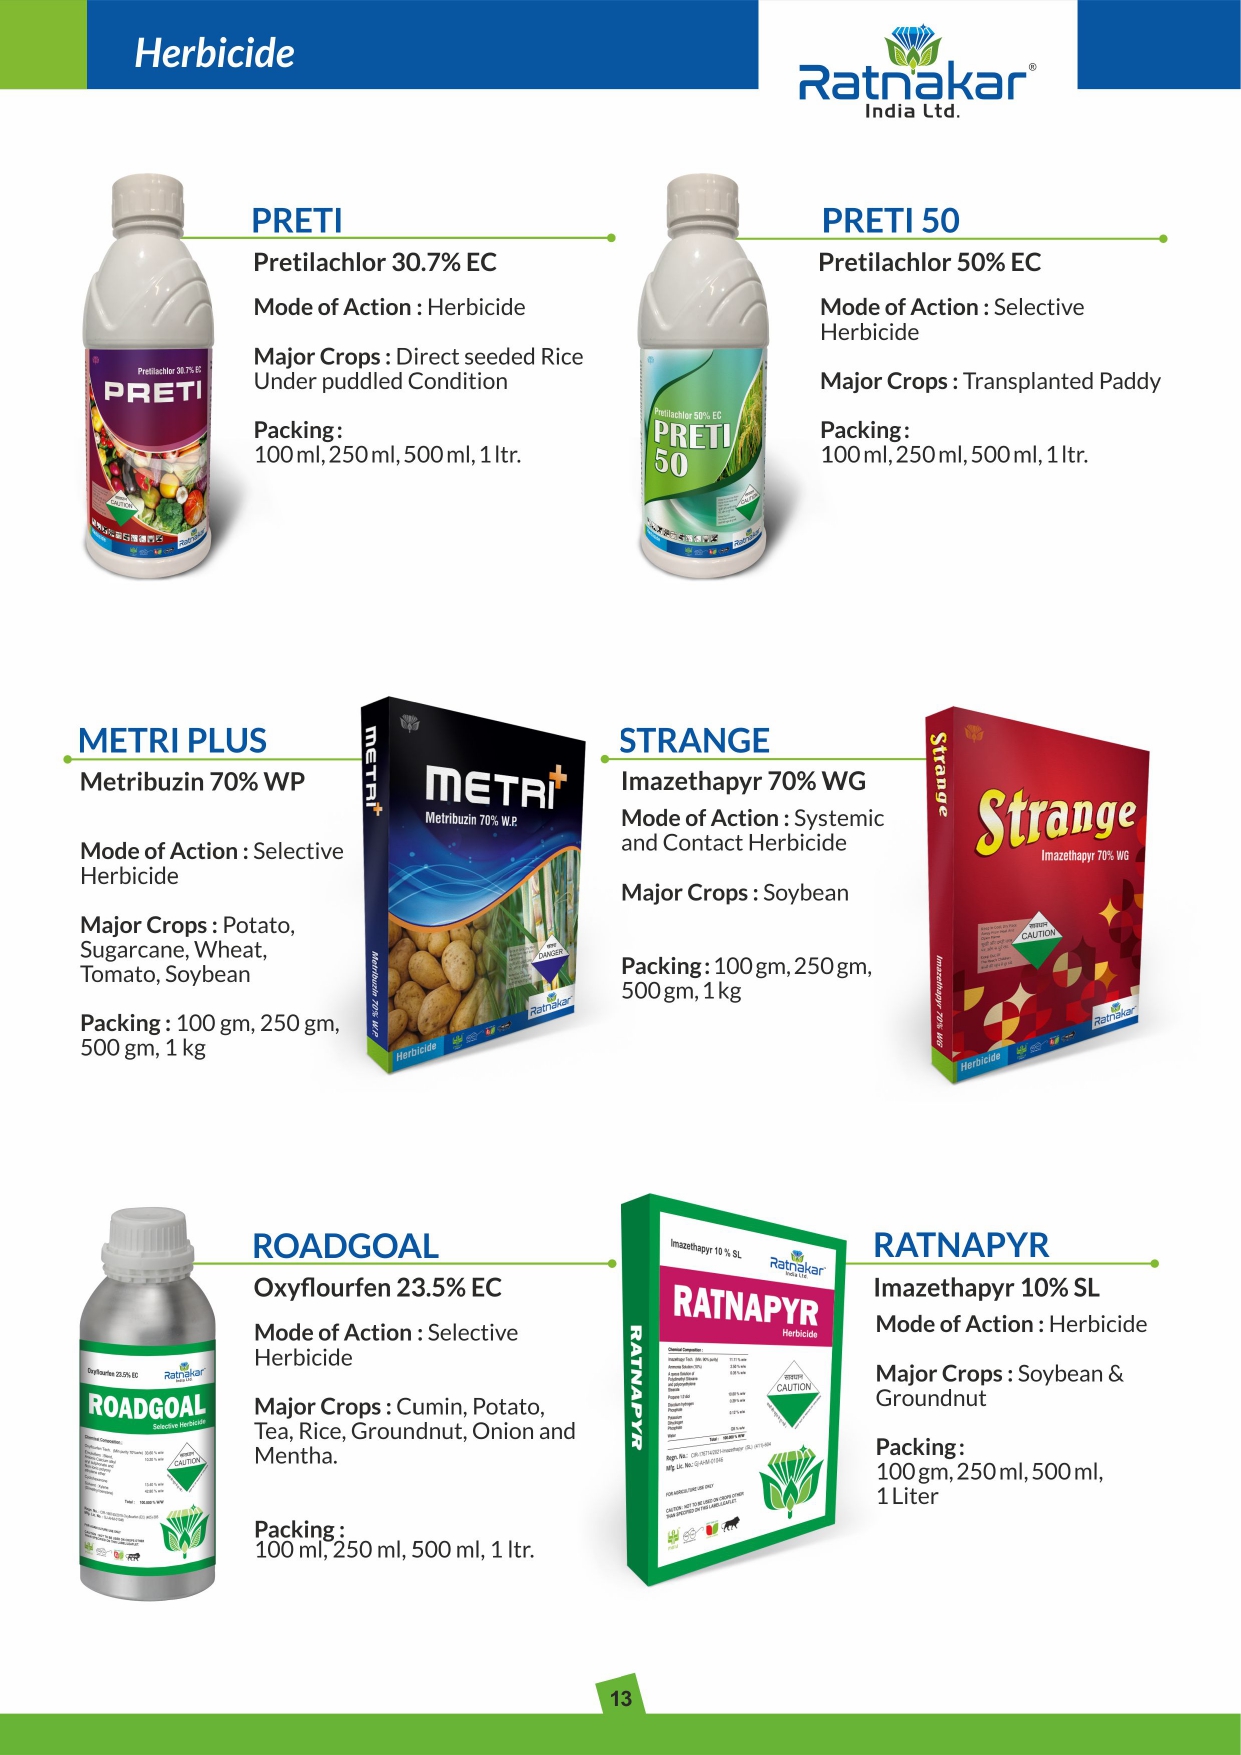 Herbicides Preti 50 from Ratnakar India Ltd